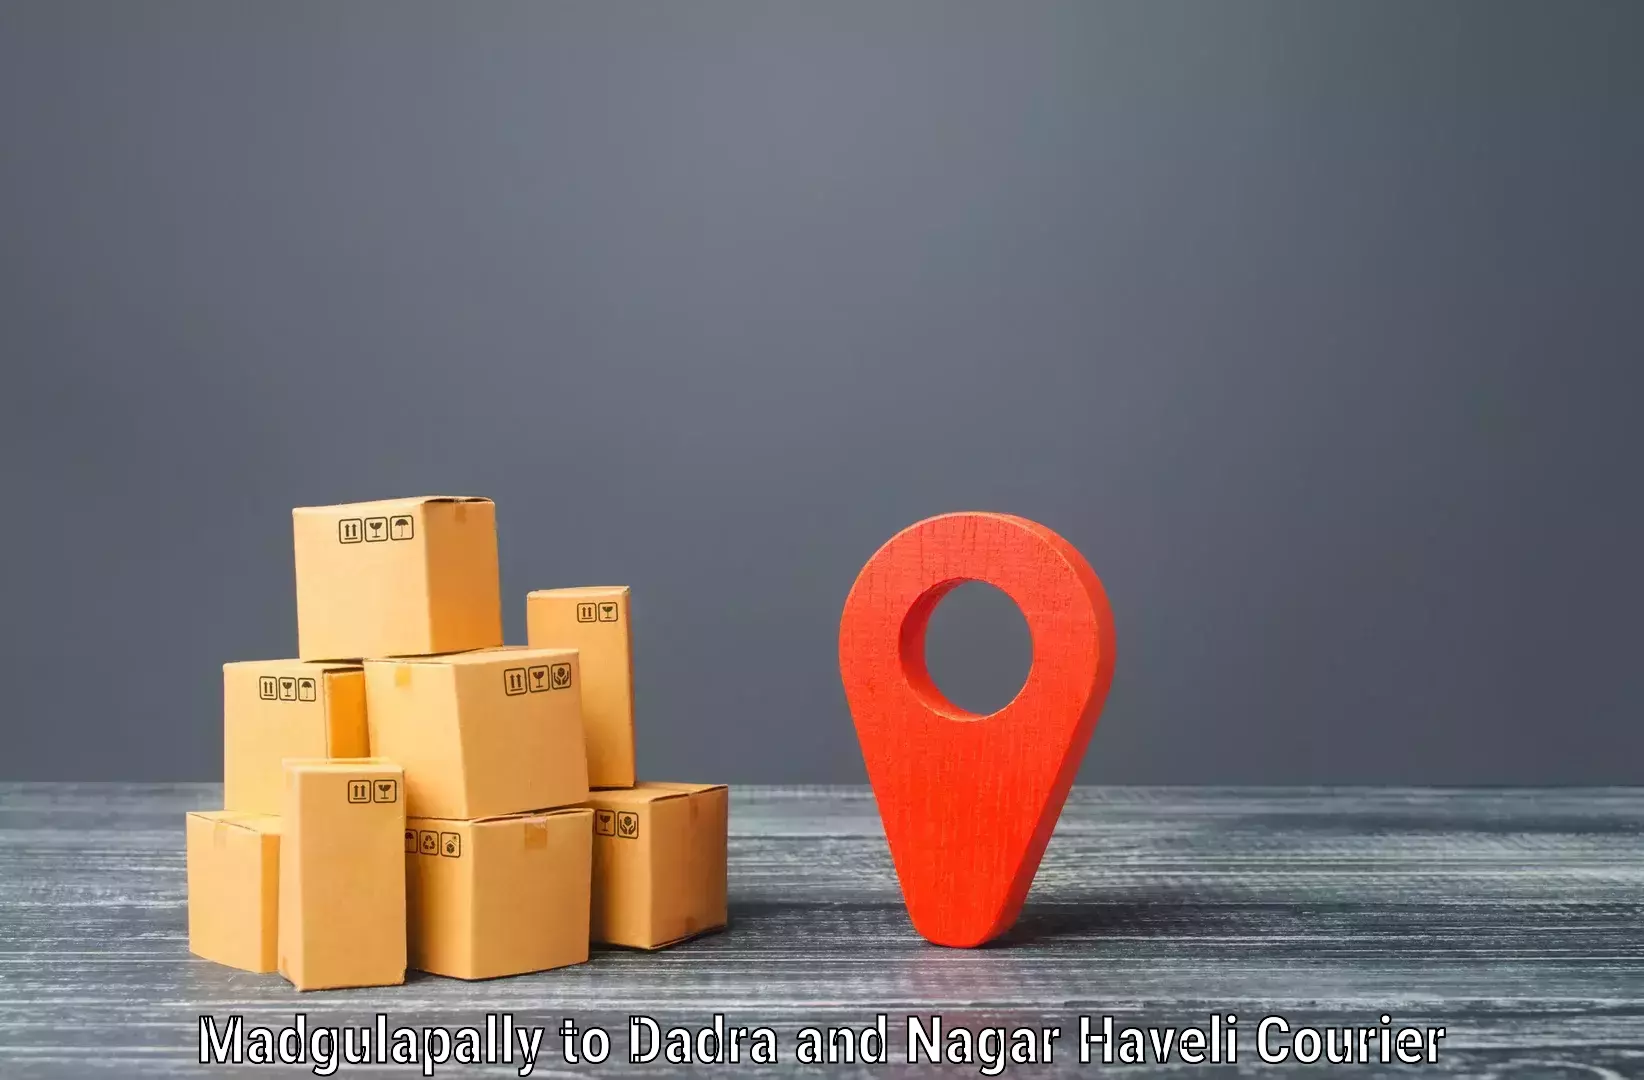 Same-day delivery options Madgulapally to Dadra and Nagar Haveli